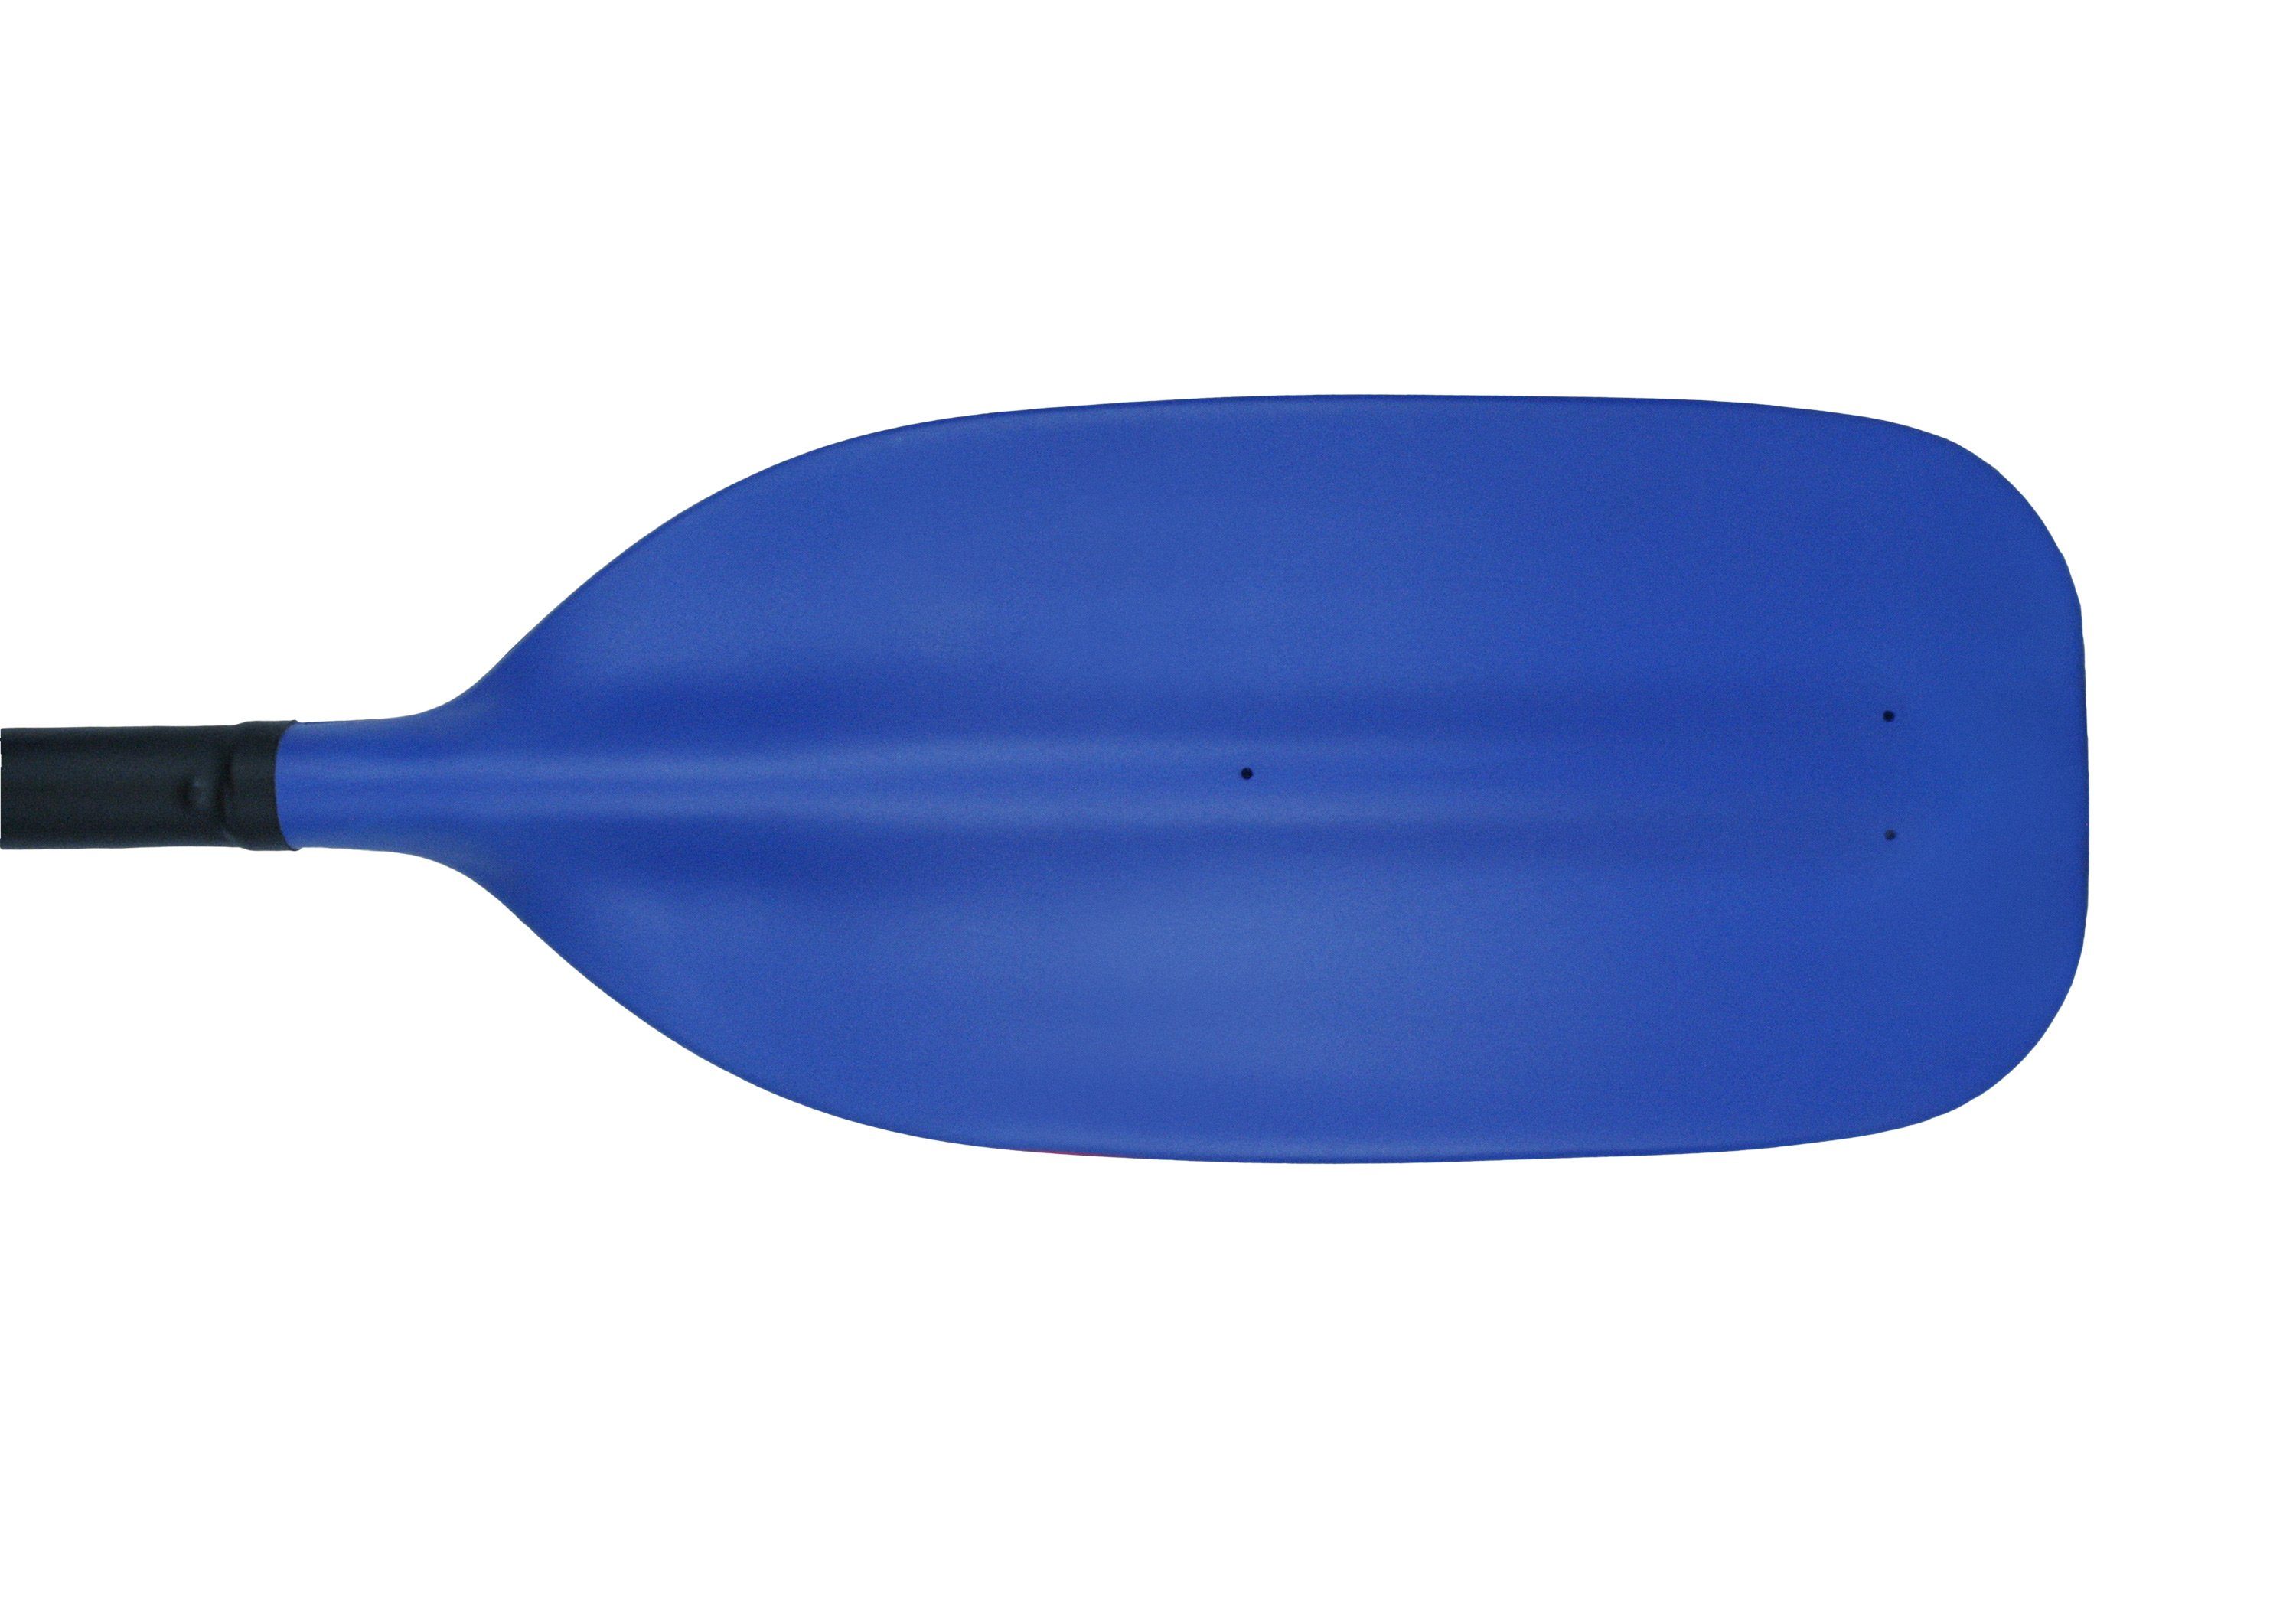 Whitewater Kajakpaddel, 230-250cm wählbar Schränkung 2-Stechpaddel, 0-90° Kombi 4-teilig, und Länge Kutech-Schlegel